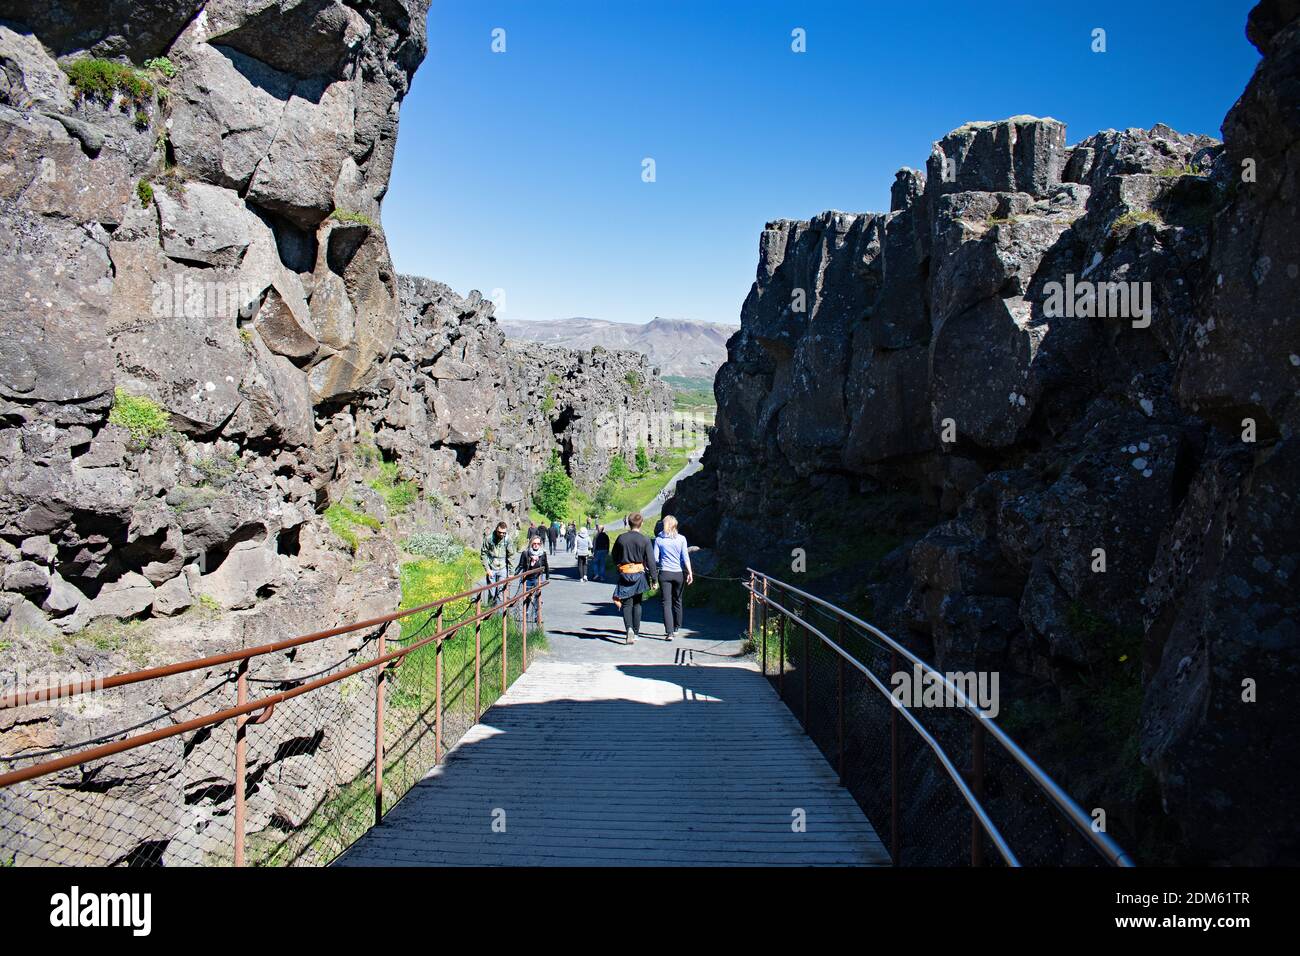 Besucher wandern entlang einer Promenade zwischen Haltepunkten in den Felsen, die durch die kontinentale Verschiebung, Thingvellir National Park erstellt wurden. Felsklippen säumen den Weg. Stockfoto